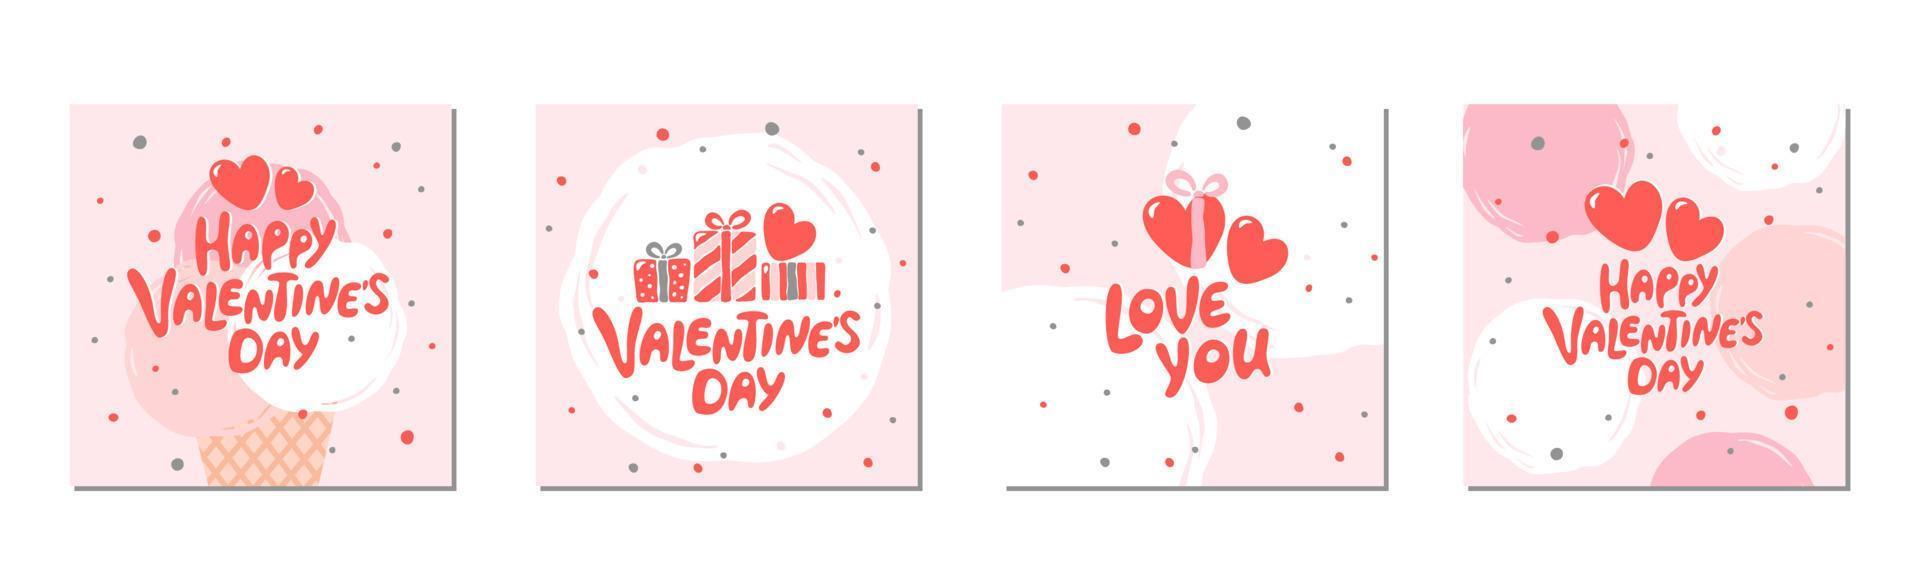 reeks van Valentijnsdag dag groet kaarten met hand- geschreven groet belettering. geschikt voor sociaal media berichten, banners ontwerp. vector illustratie.